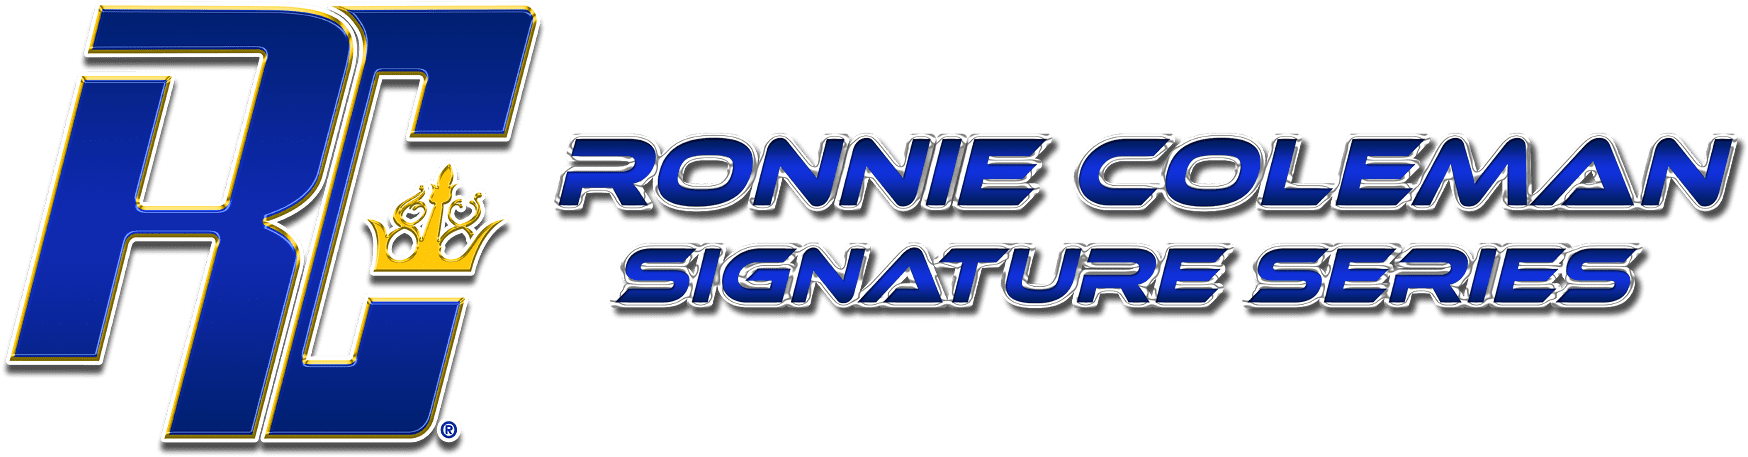 کمپانی مکمل Ronnie Coleman Signature Series توسط 8 بار قهرمان آقای المپیا ، Ronnie Coleman اداره می شود . کمپانی رونی کلمن متشکل از پیشکسوتان این صنعت است